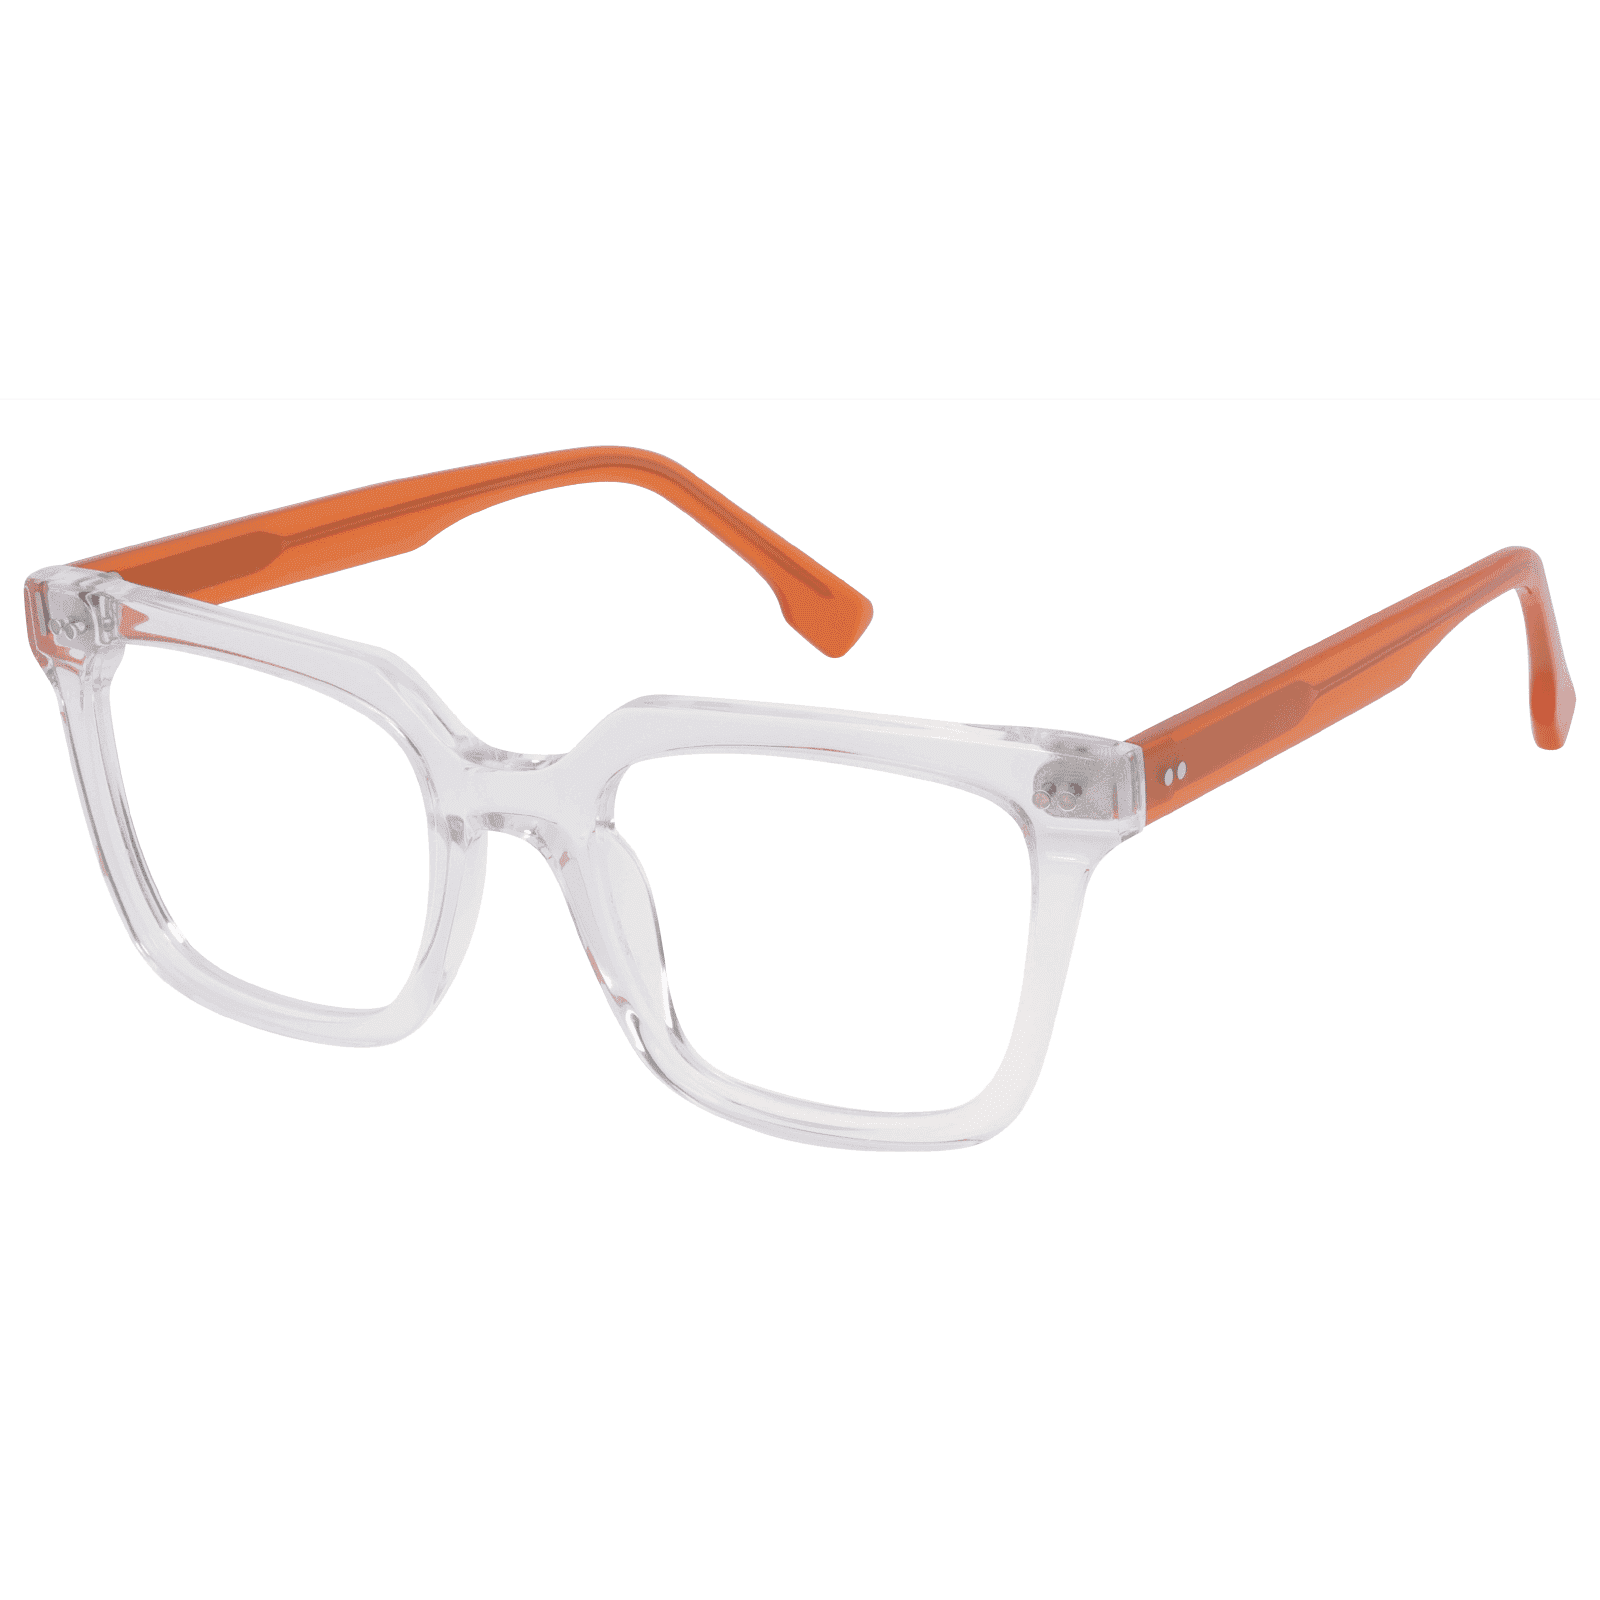 Onirii - Square Clear-orange Reading Glasses for Men & Women